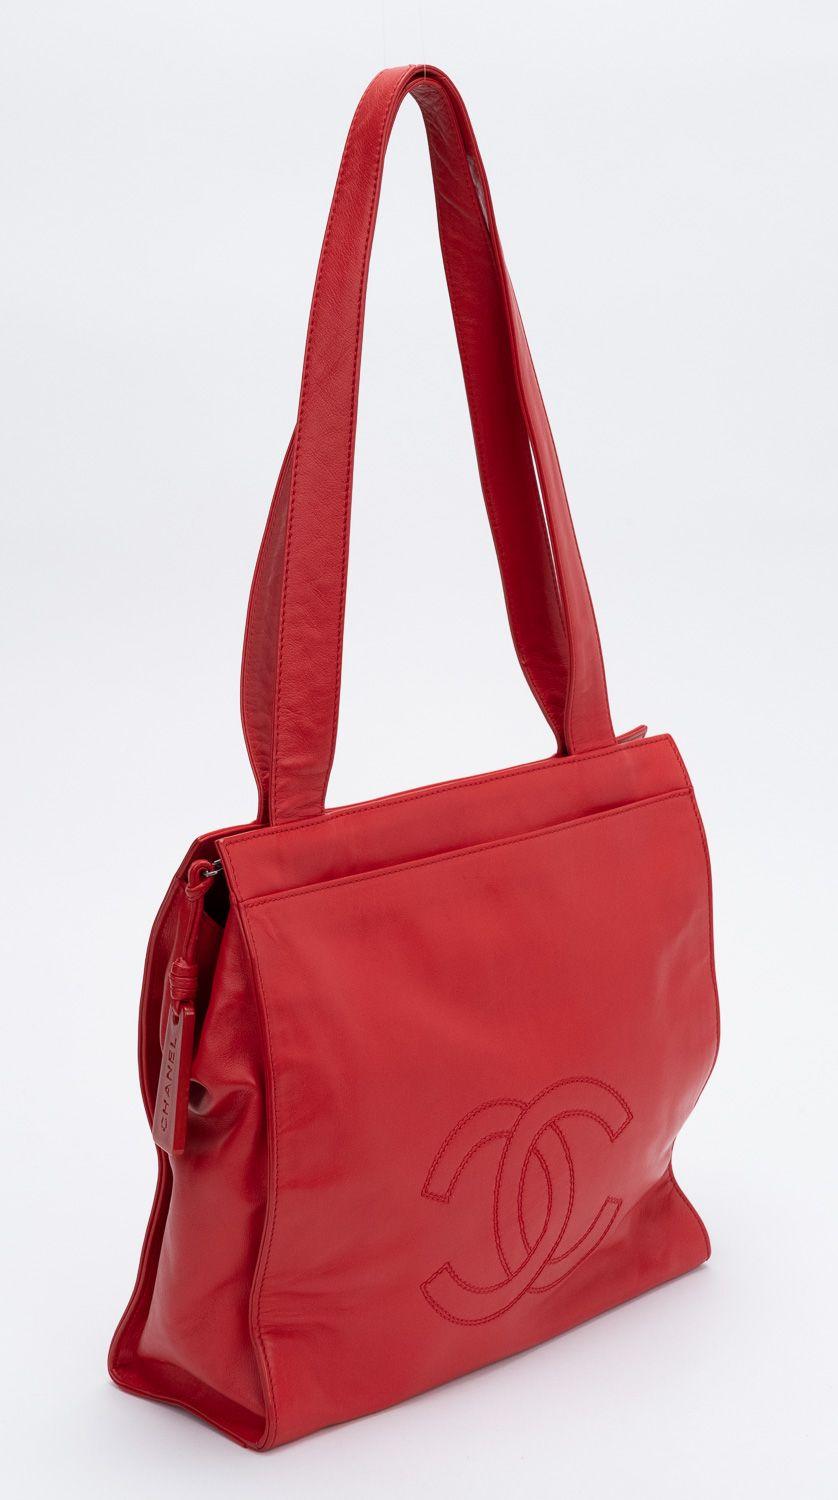 Sac fourre-tout vintage Chanel des années 90 en rouge. Le sac est orné d'un grand logo CC hedged sur le devant. La chute d'épaule est de 11,5